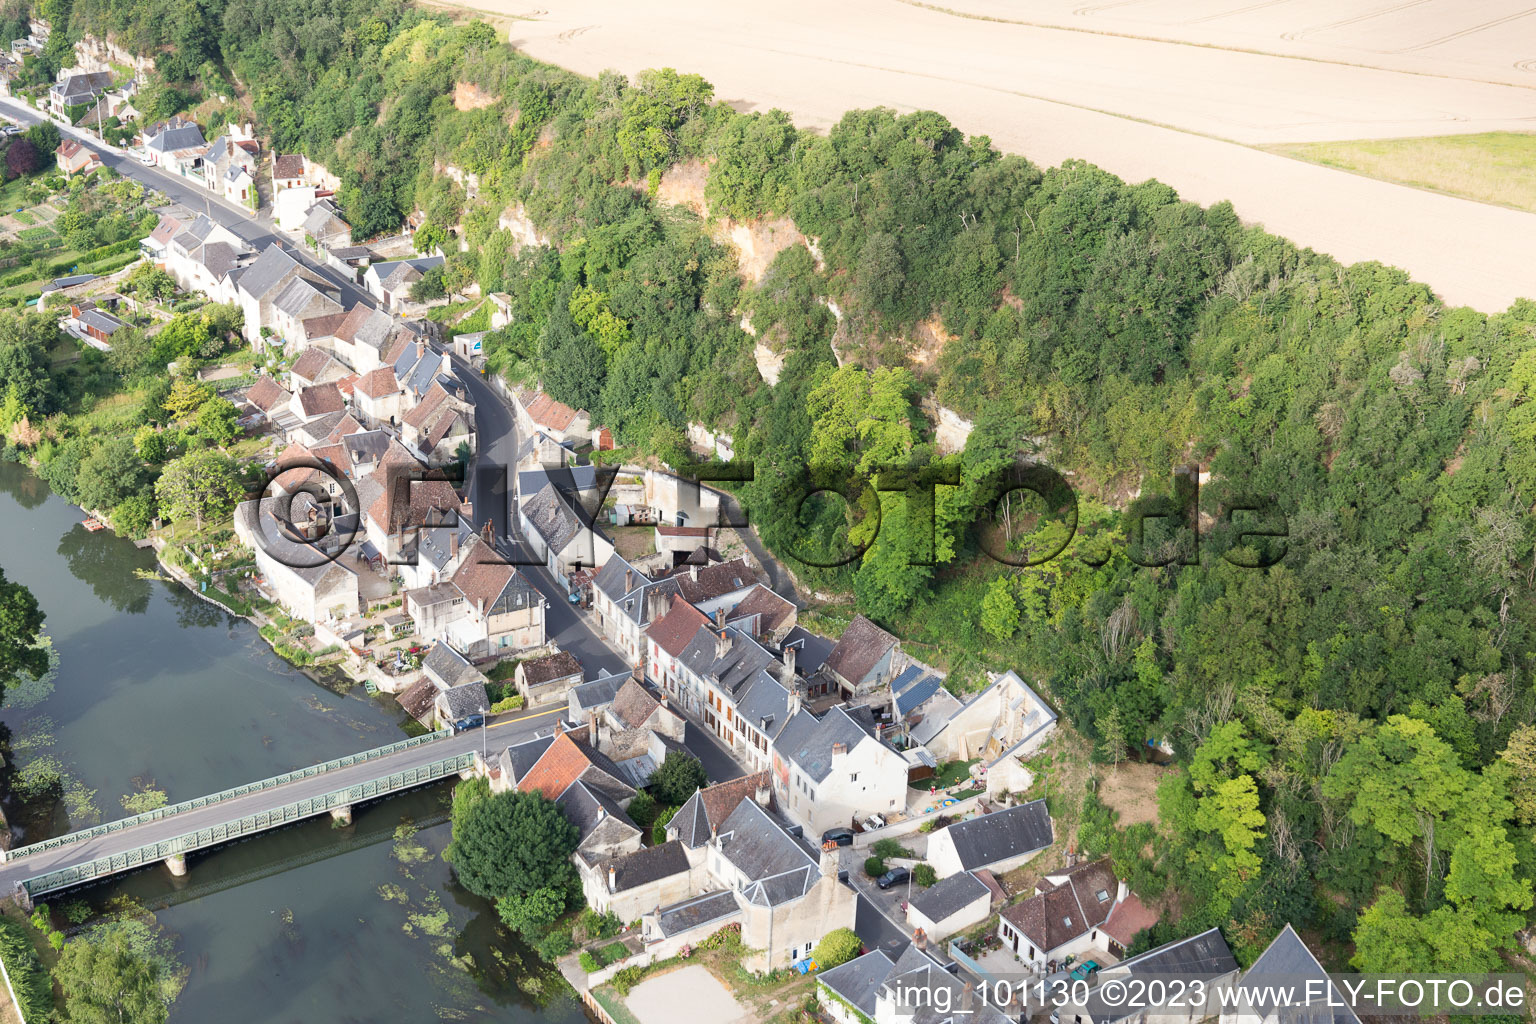 Saint-Rimay im Bundesland Loir-et-Cher, Frankreich von der Drohne aus gesehen